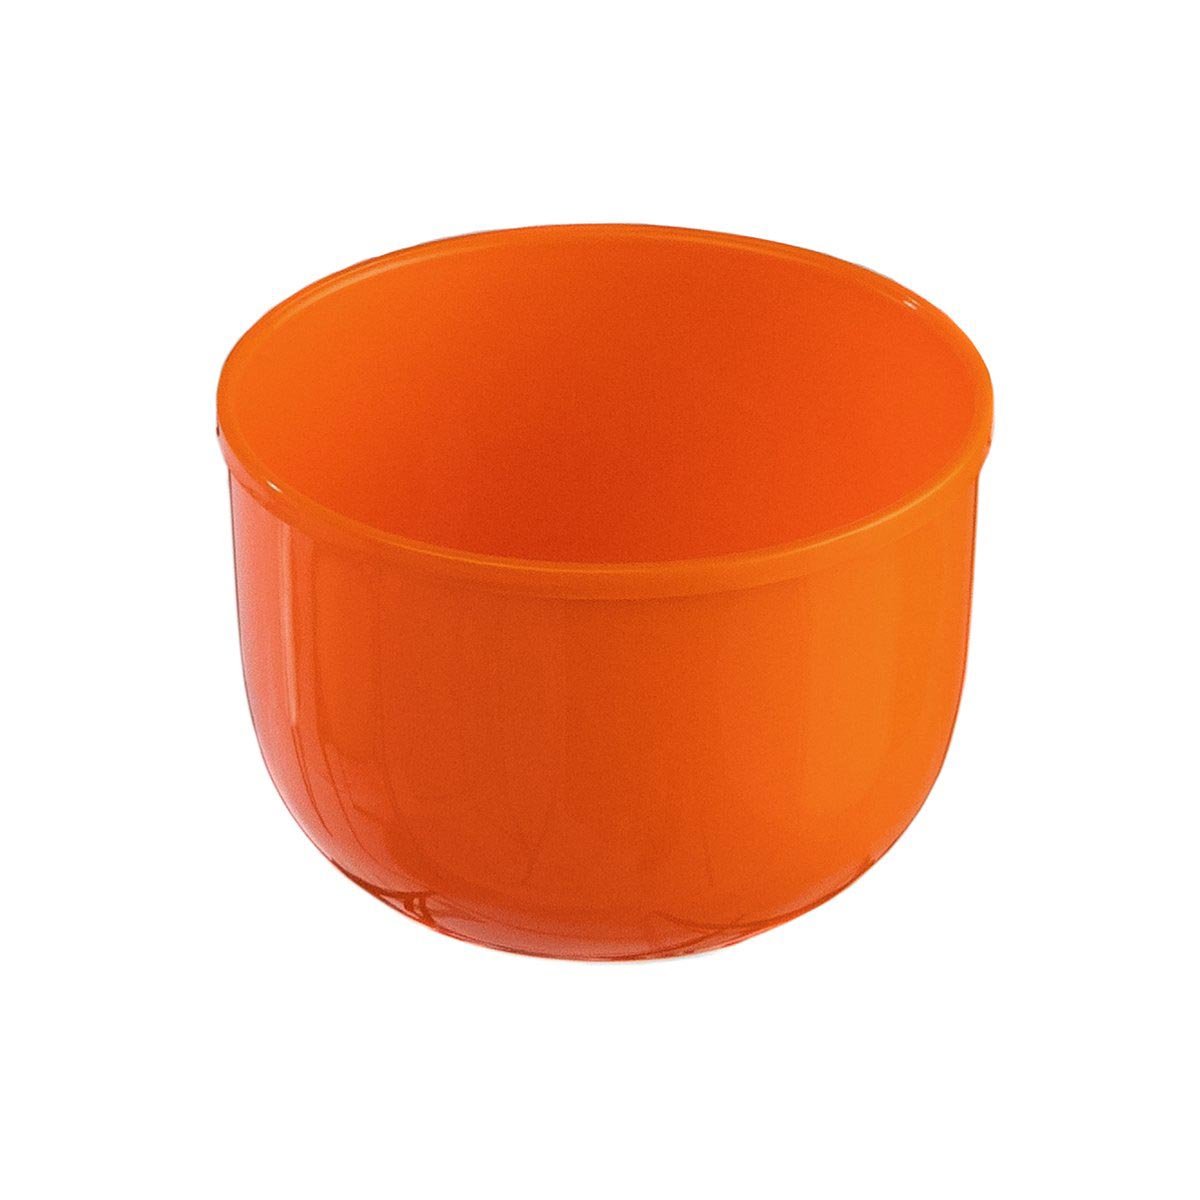 Plastic orange lid cup